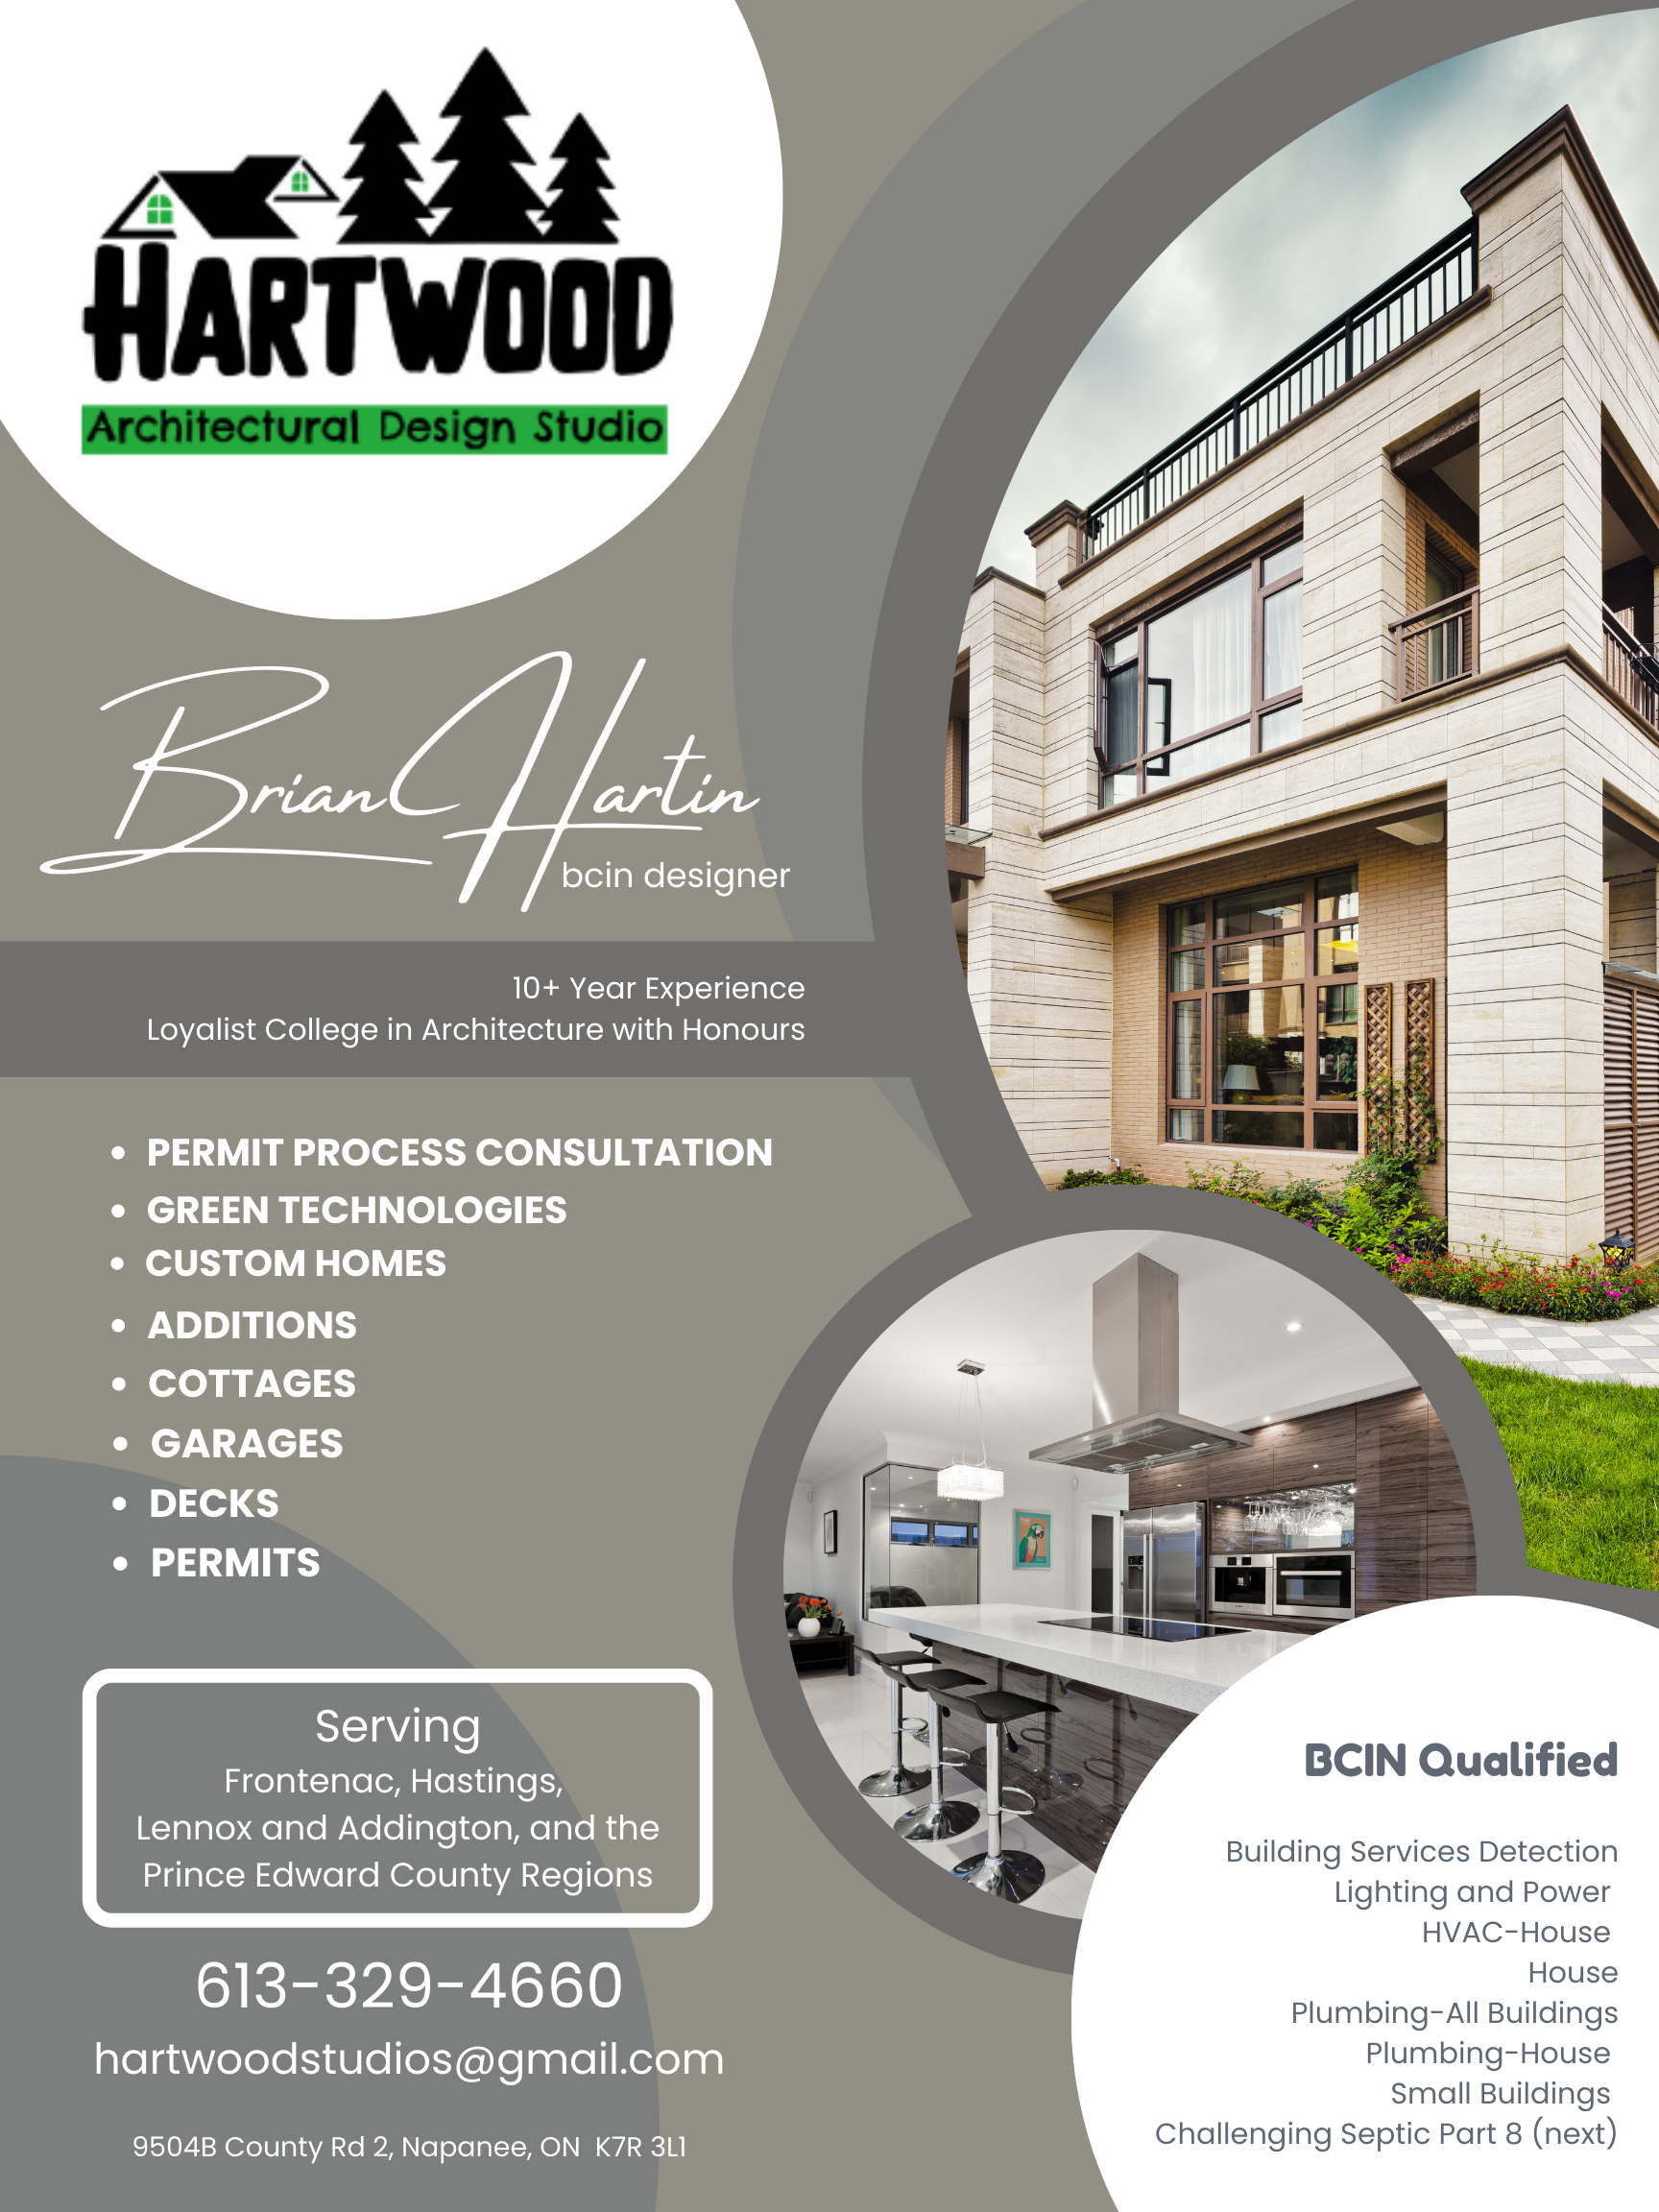 Hartwood Architectural Design Studio